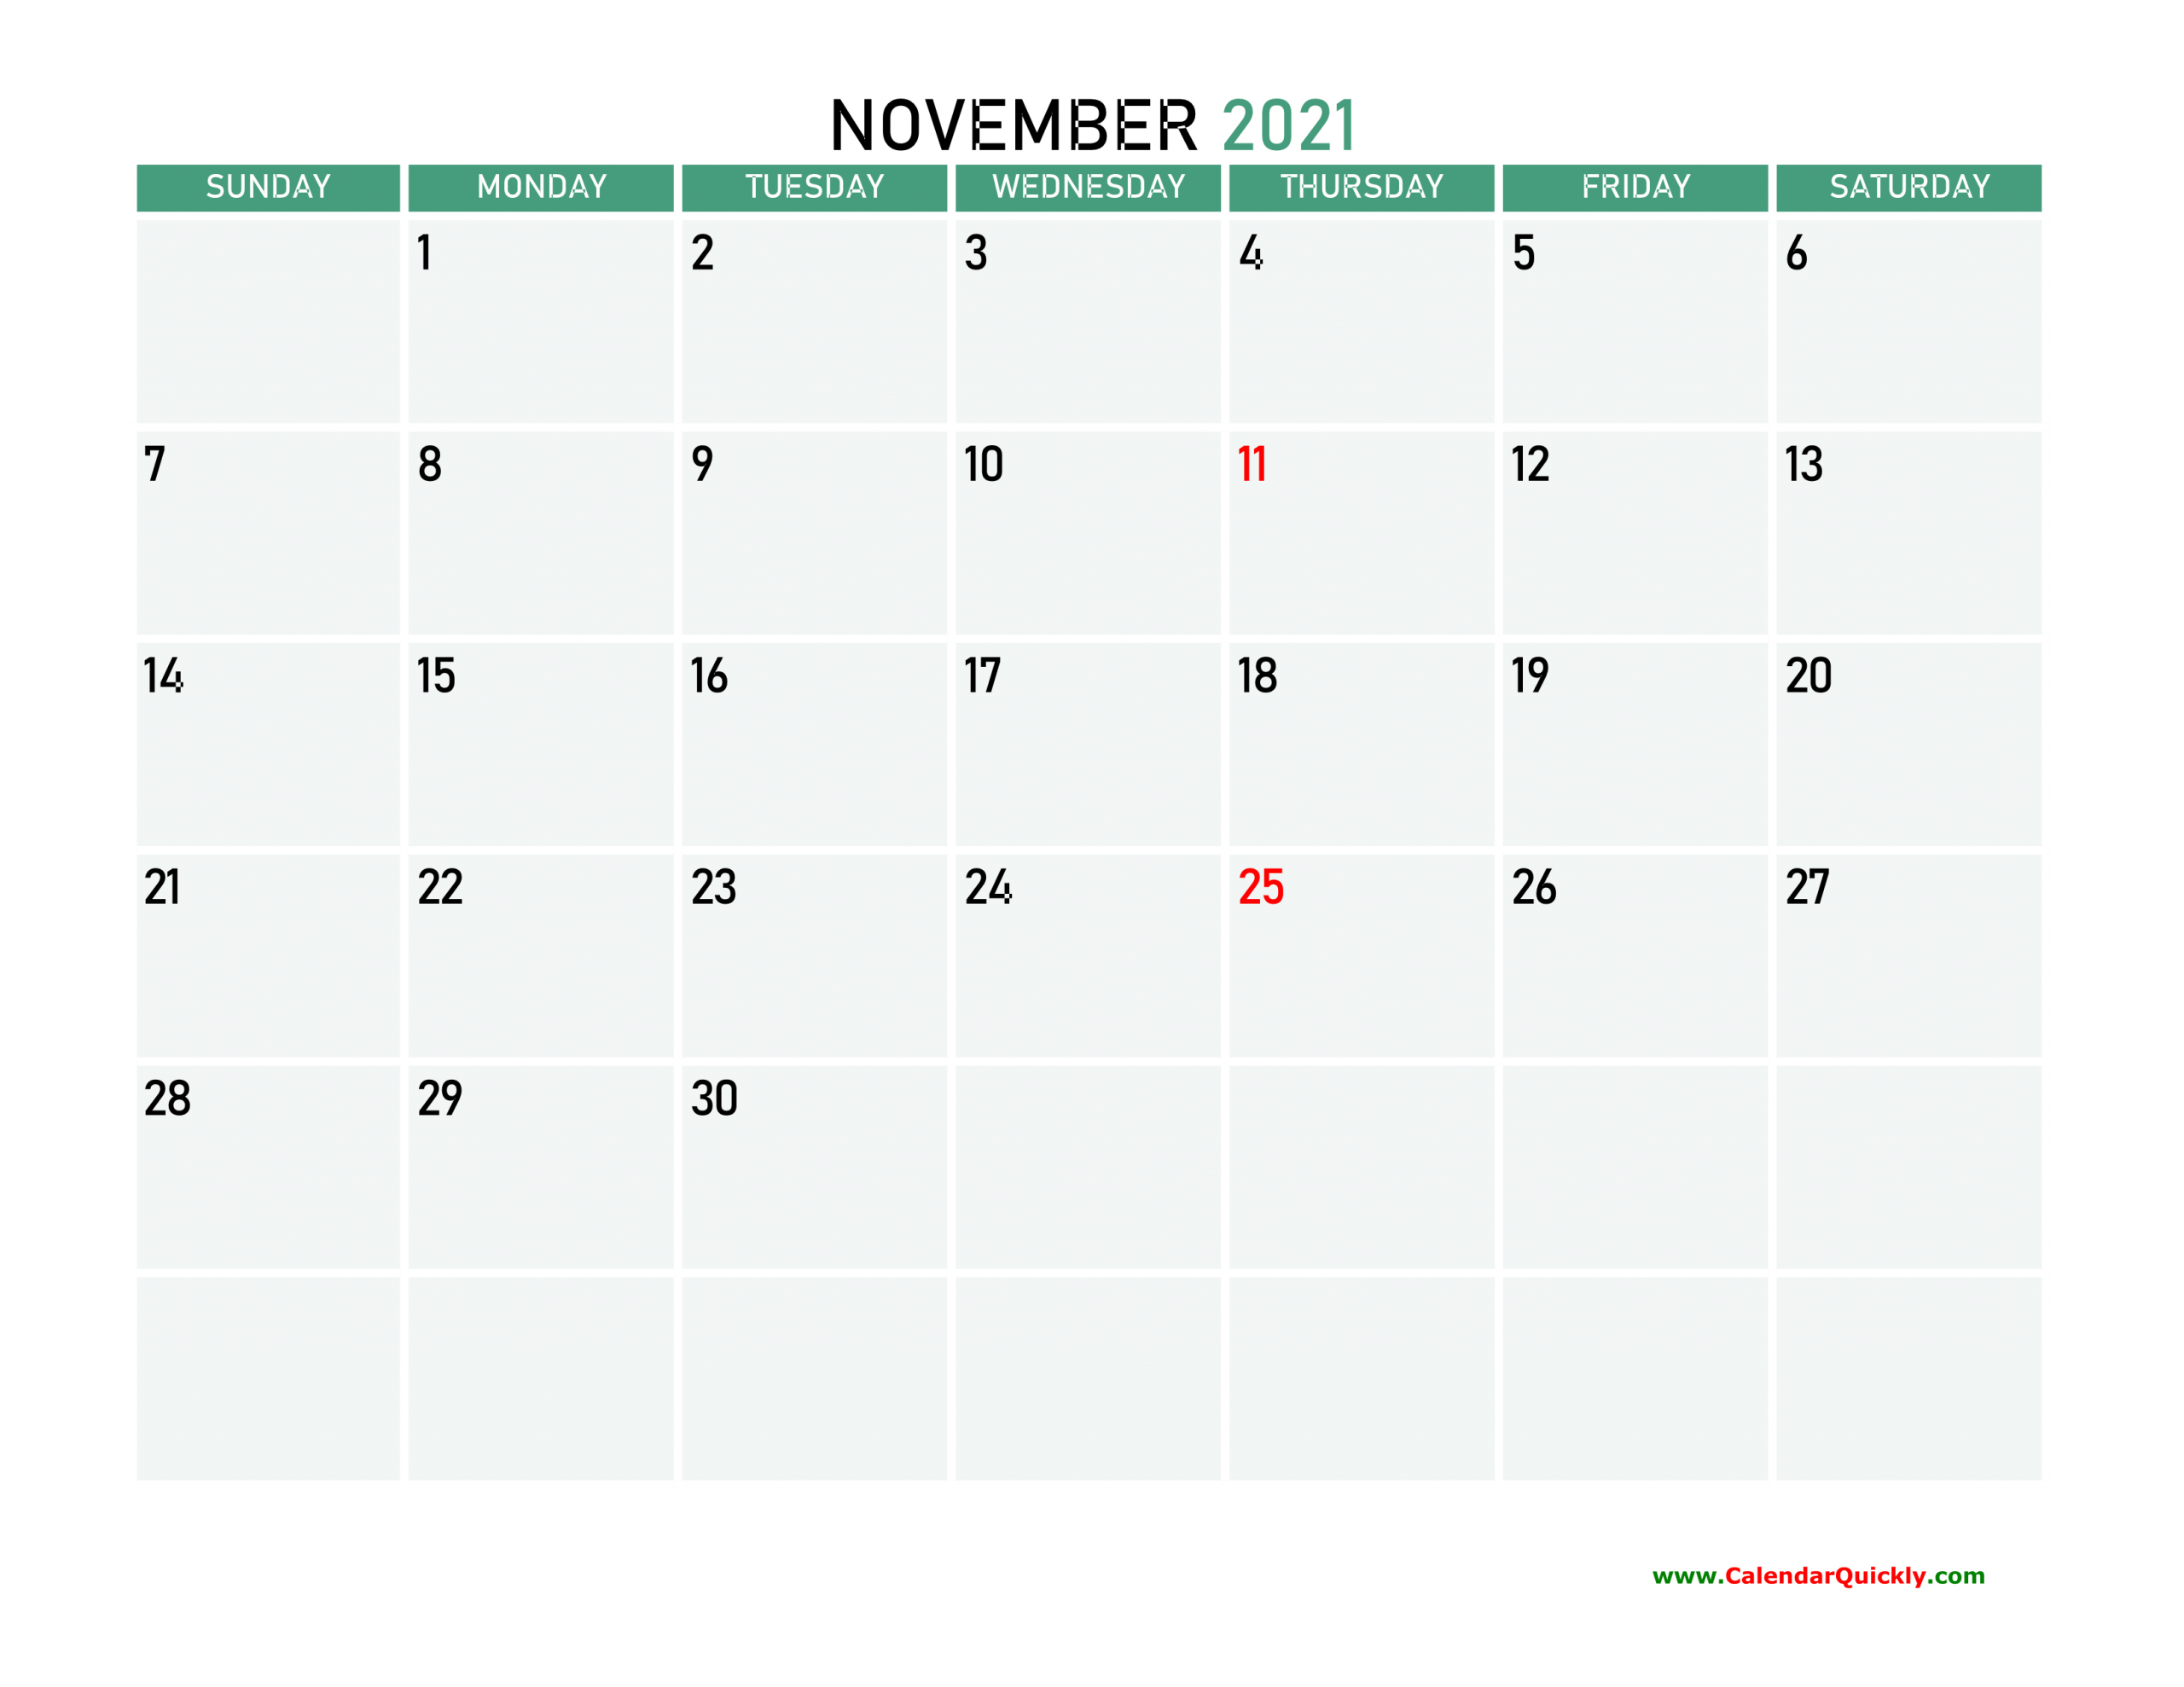 November 2021 Printable Calendar Calendar Quickly